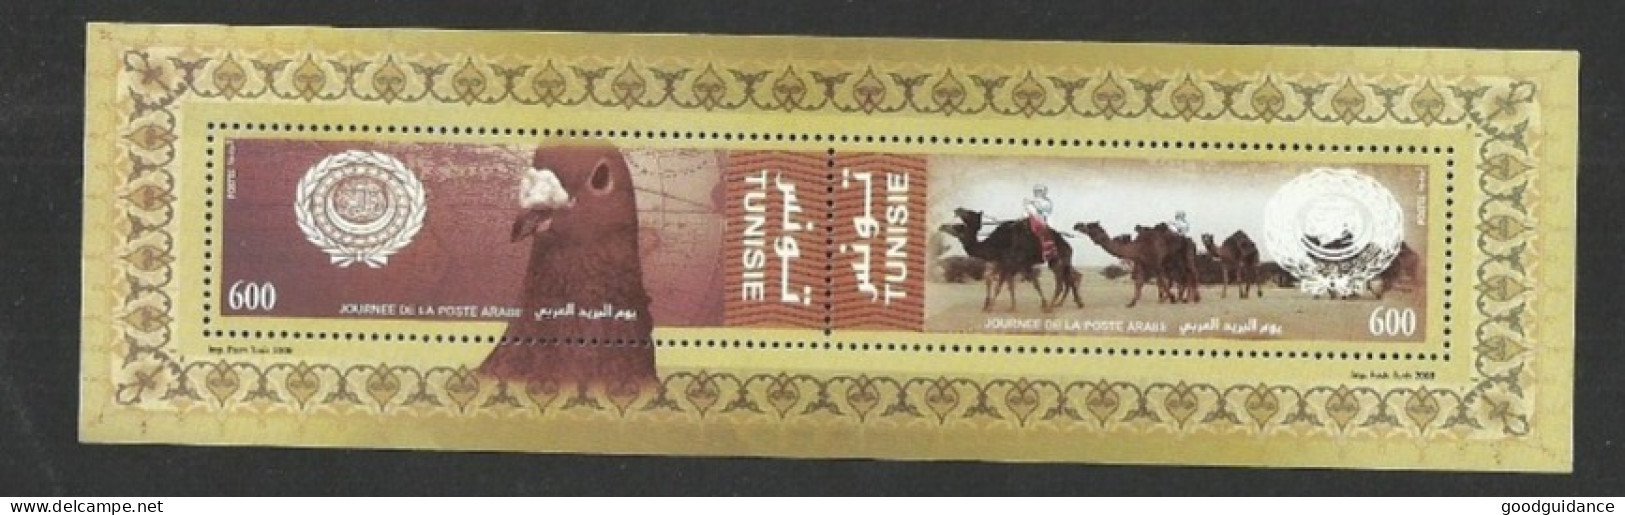 2008- Tunisia-  Minisheet  - Arab Post Day 2008 - Joint Issue - Bird - Camel - Desert - MNH** - Arabia Saudita